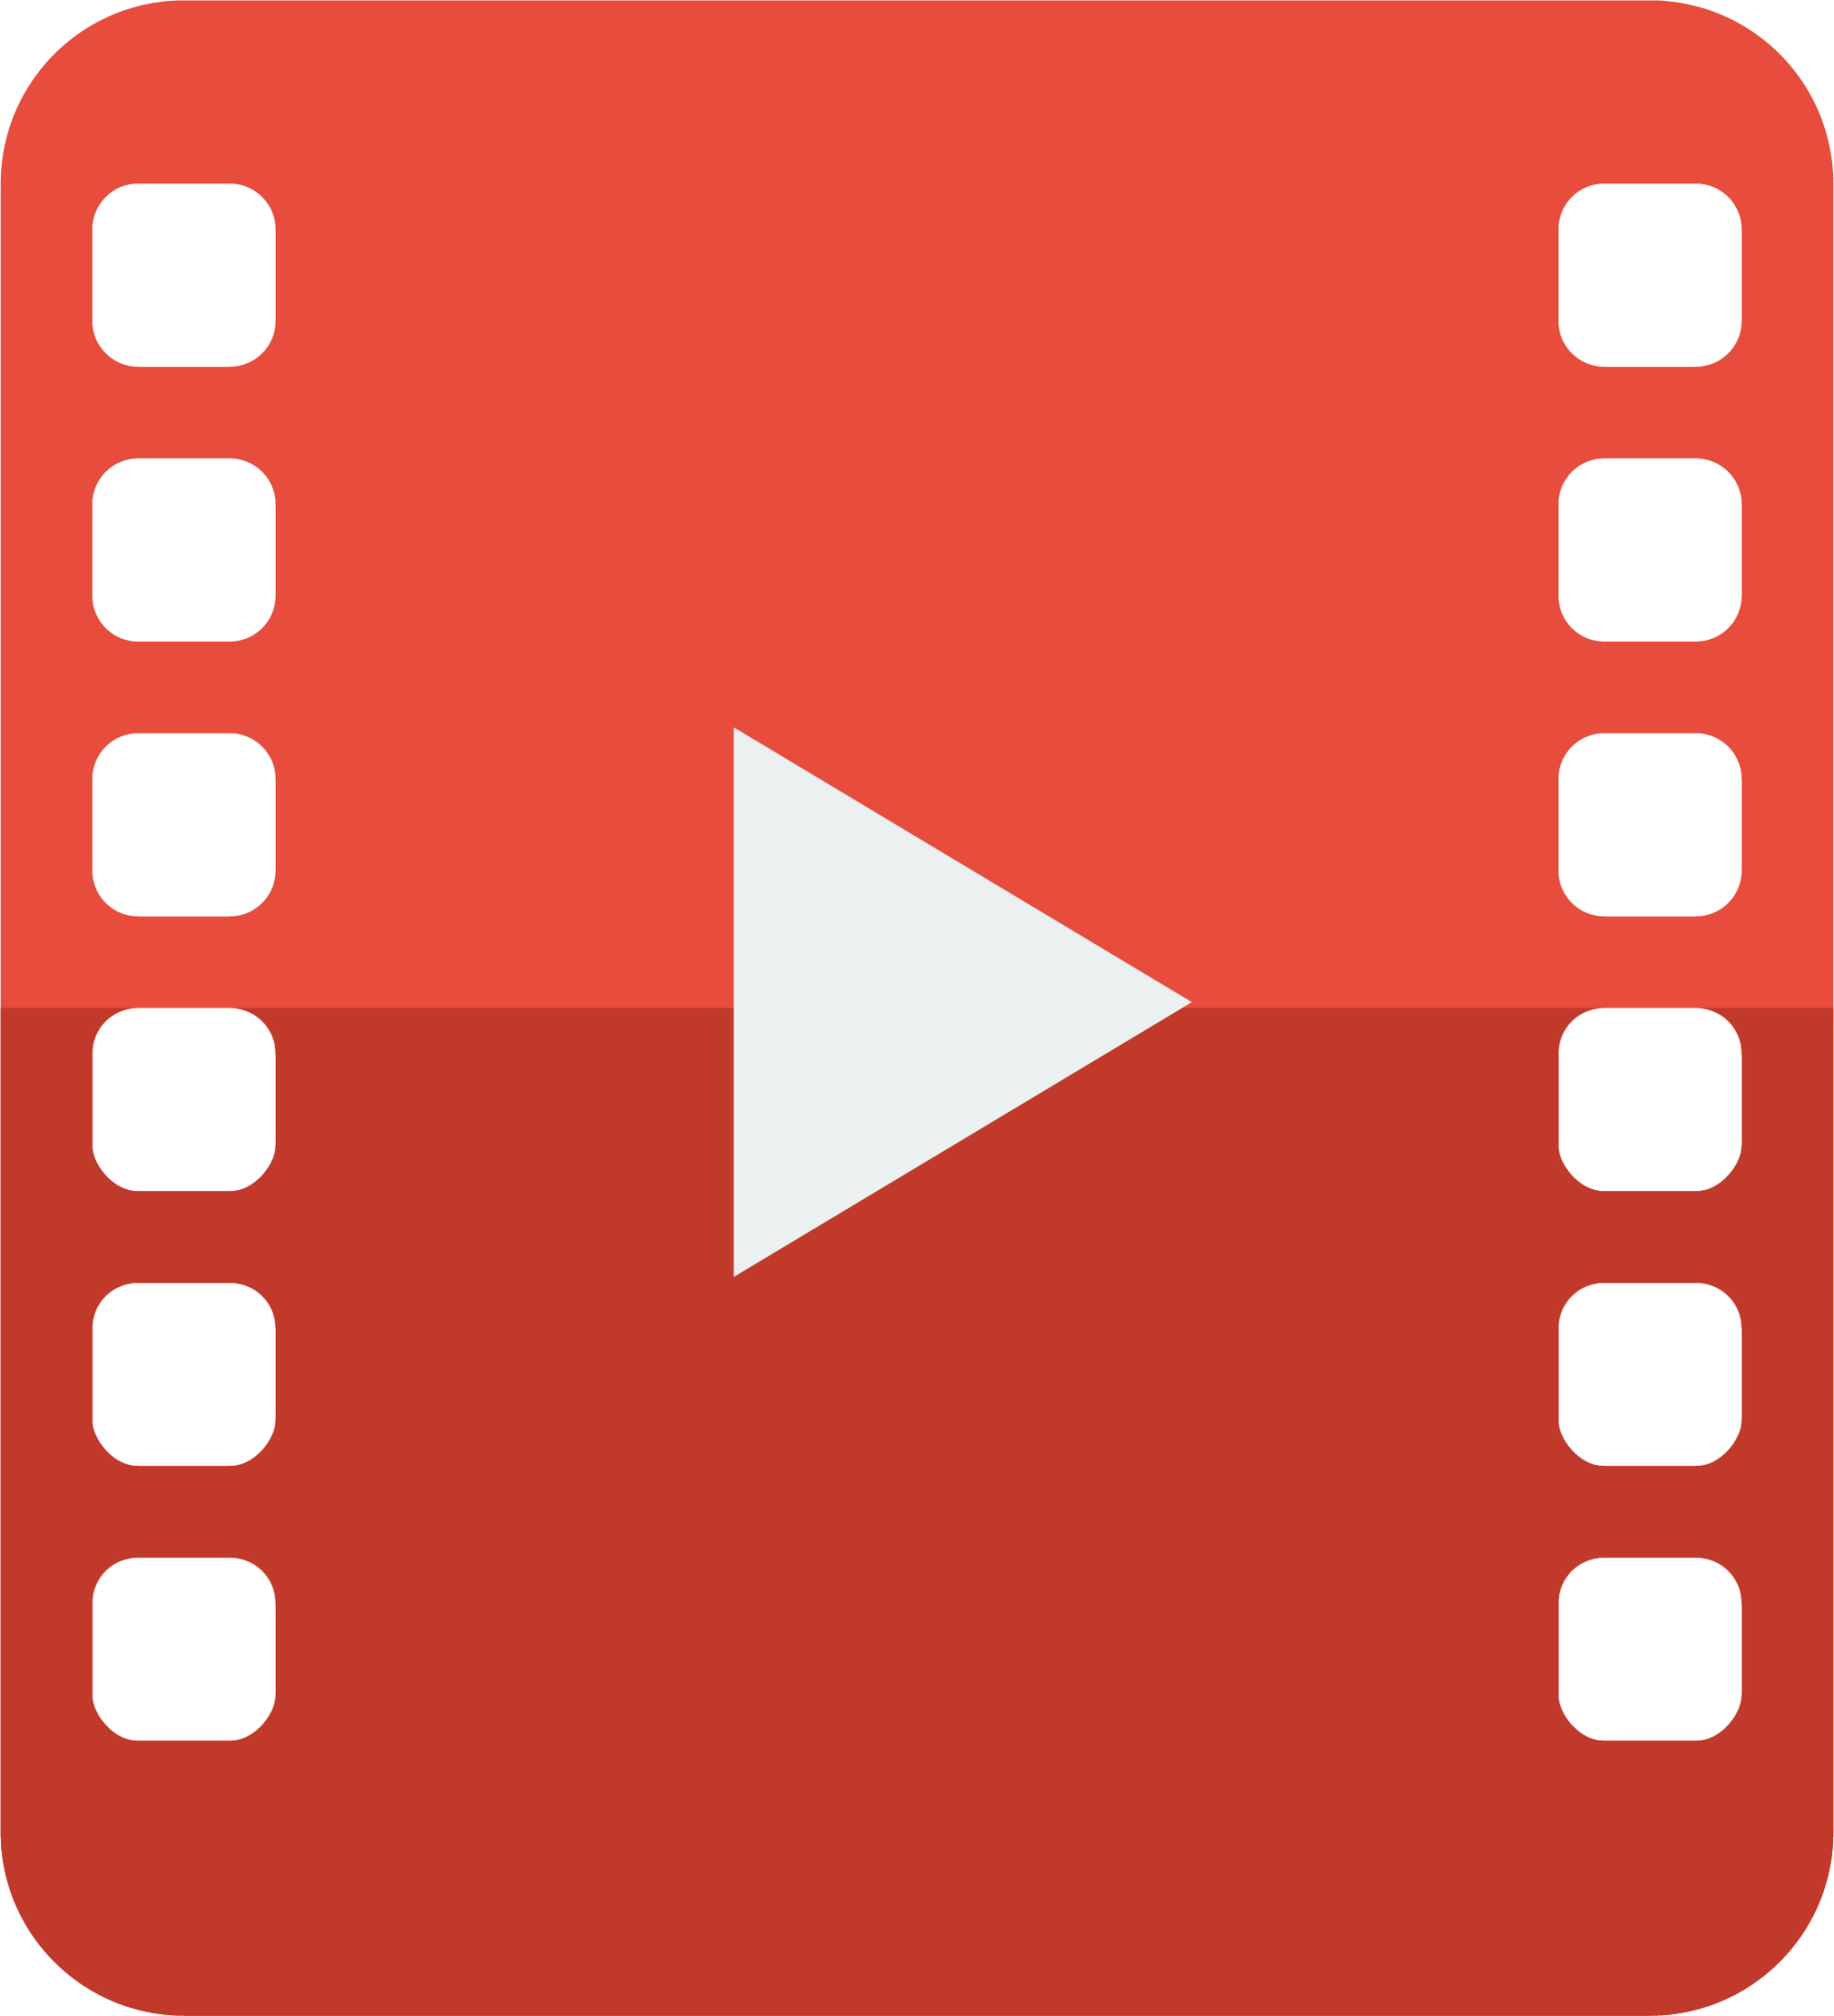 file video icon